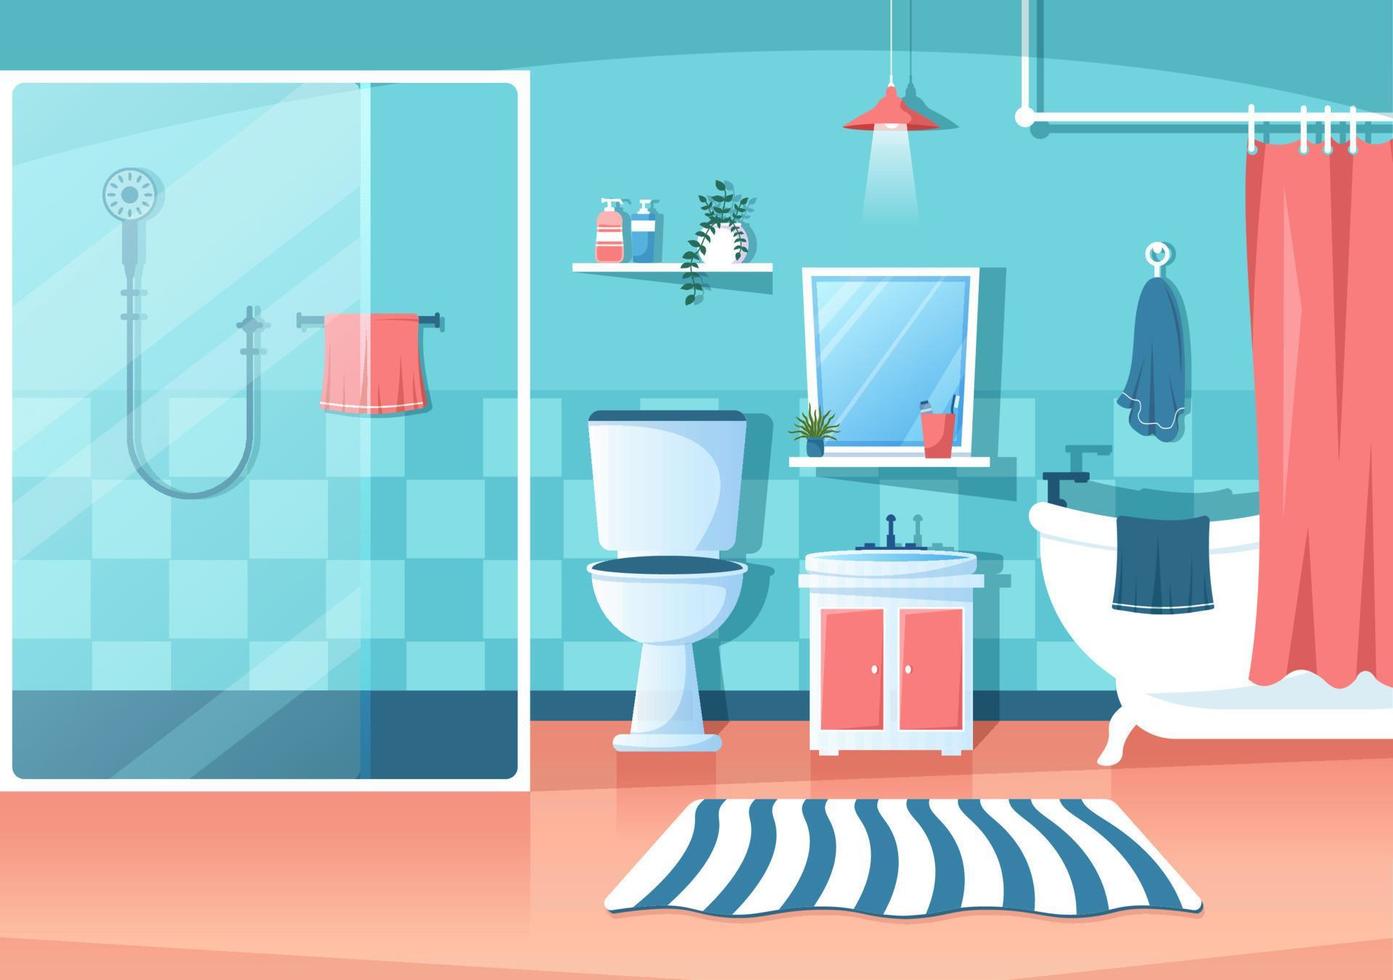 moderne badezimmermöbel innenhintergrundillustration mit badewanne, wasserhahn toilettenwaschbecken zum duschen und aufräumen in flachem farbstil vektor